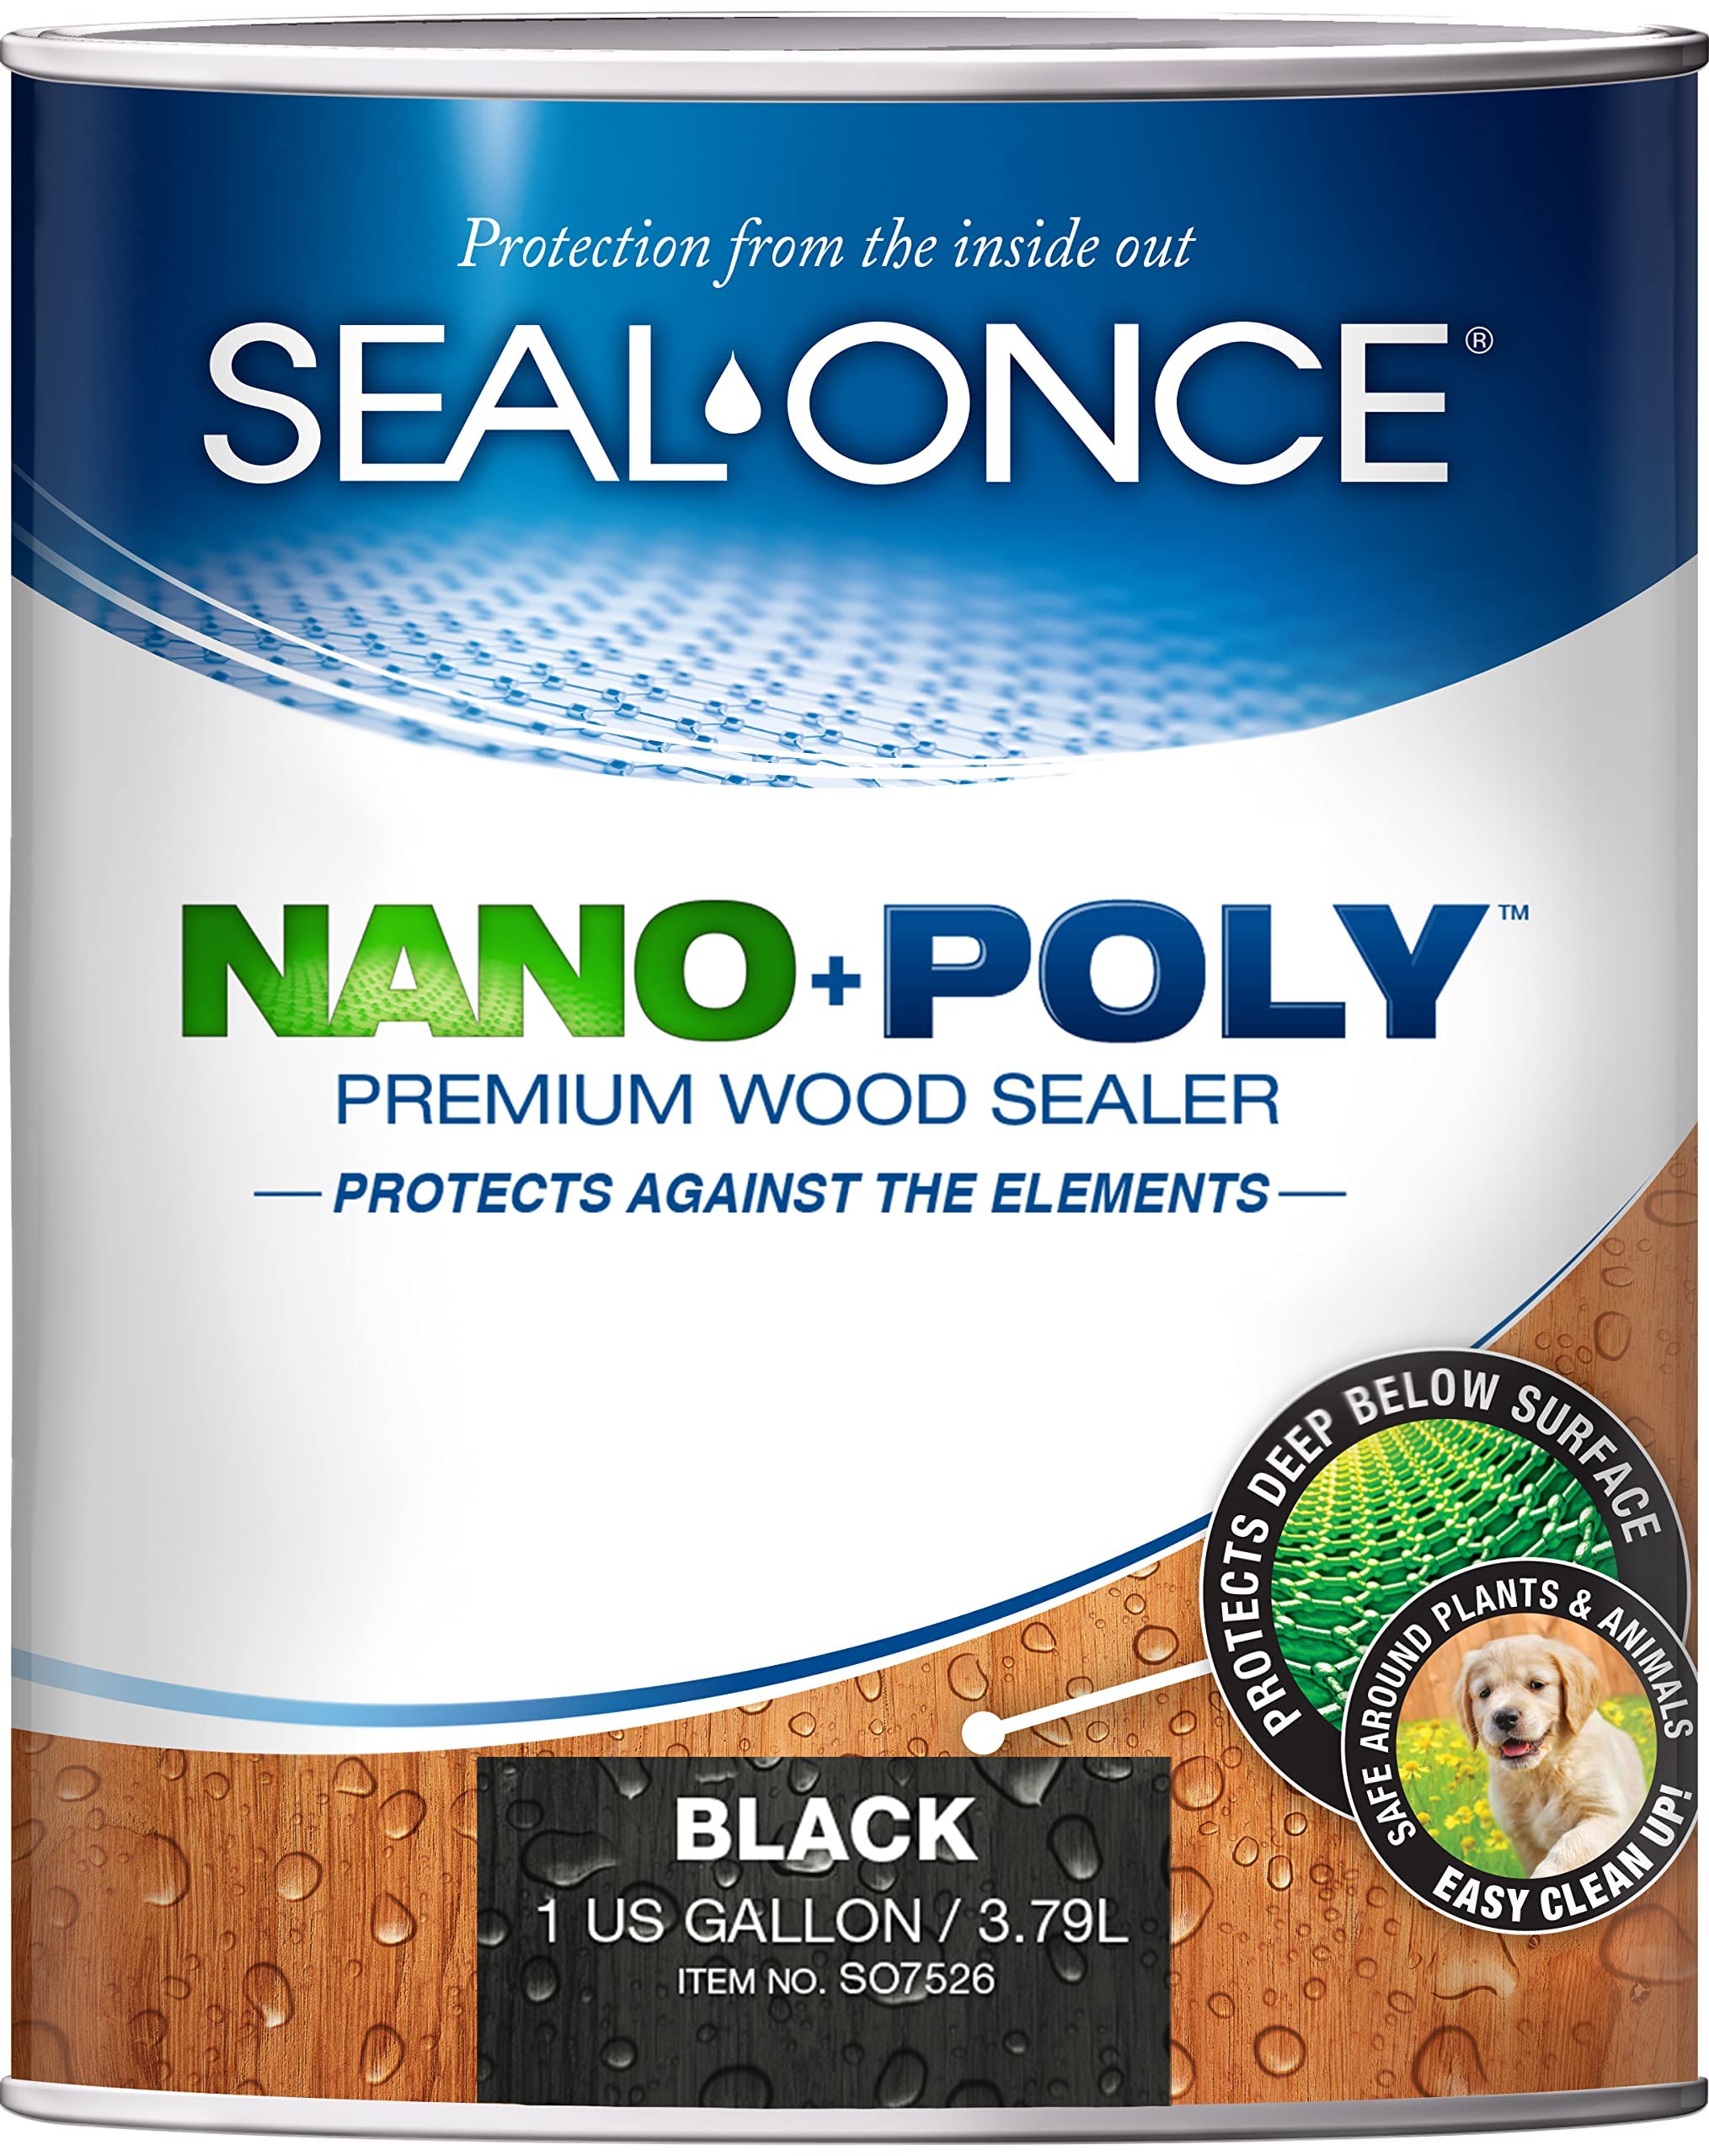 Seal-Once Nano+Poly проникающий герметик для дерева с полиуретаном - водостойкий герметик премиум-класса